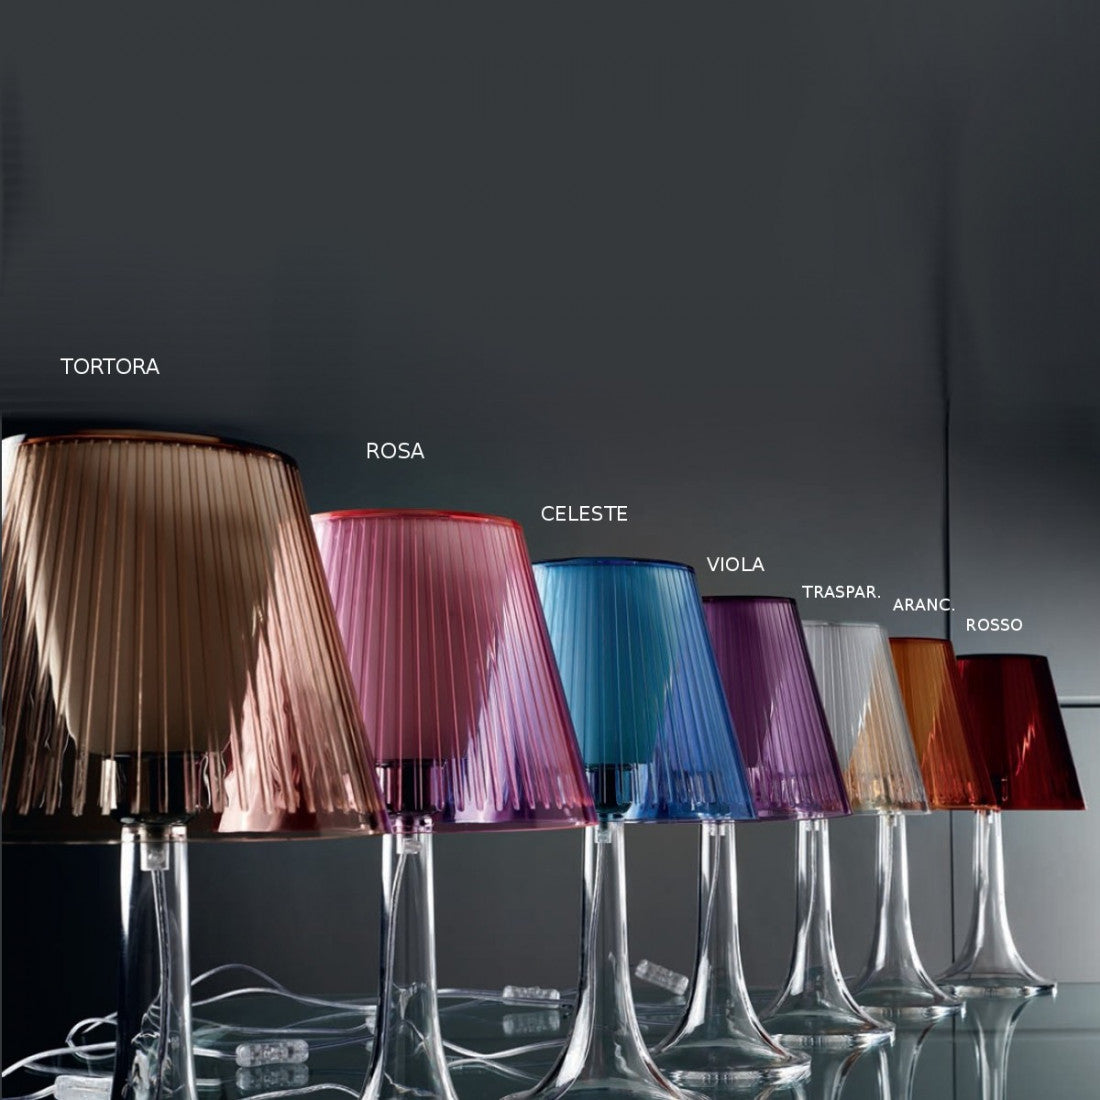 Abat-jour illuminando jolly g e27 led lampada tavolo moderna elegante colorata acrilico interno, colore celeste